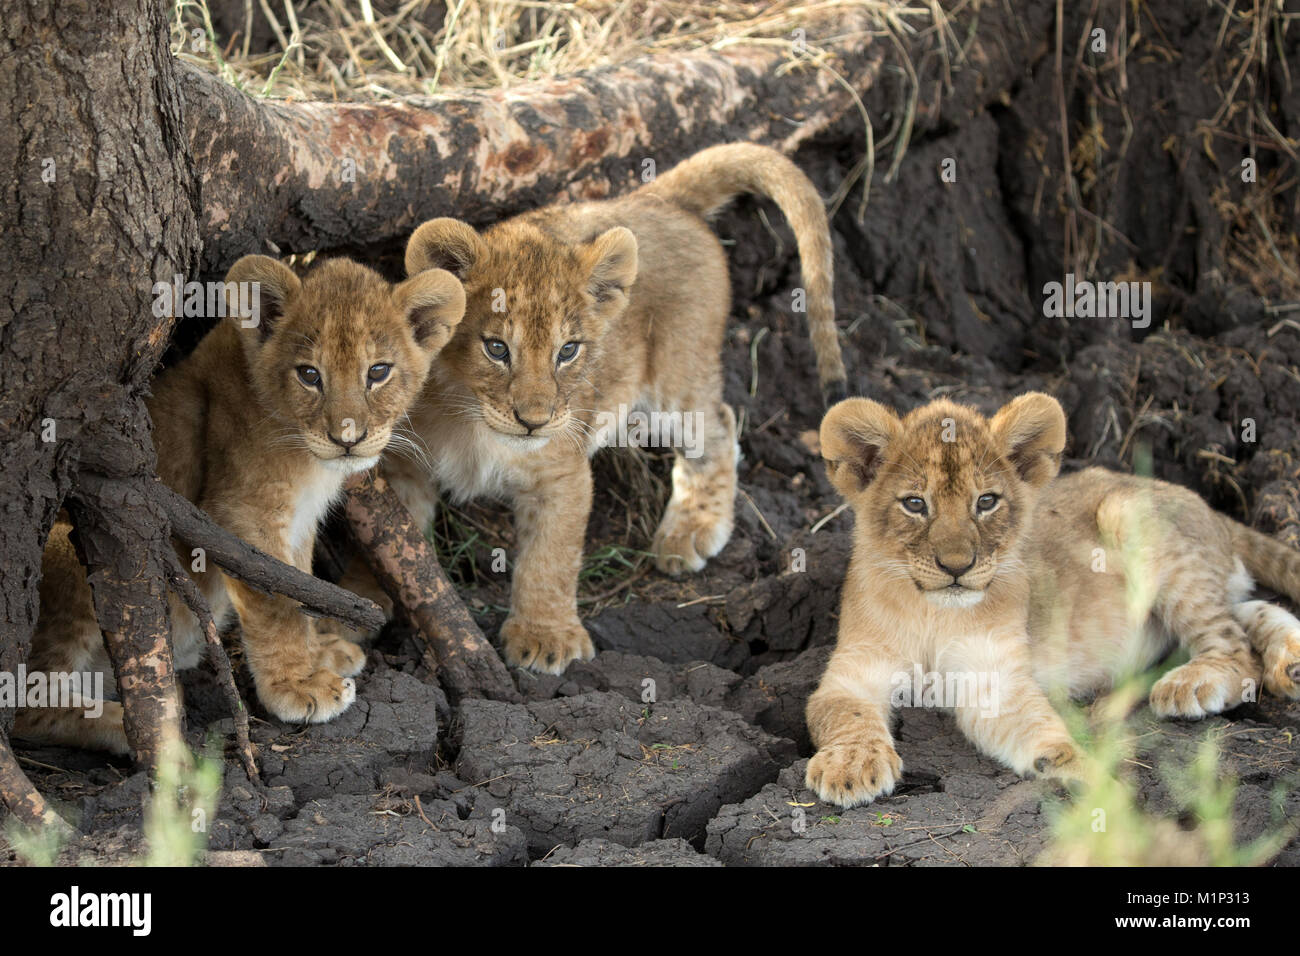 Lion cubs (Panthera leo), Serengeti National Park, Tanzania, East Africa, Africa Stock Photo